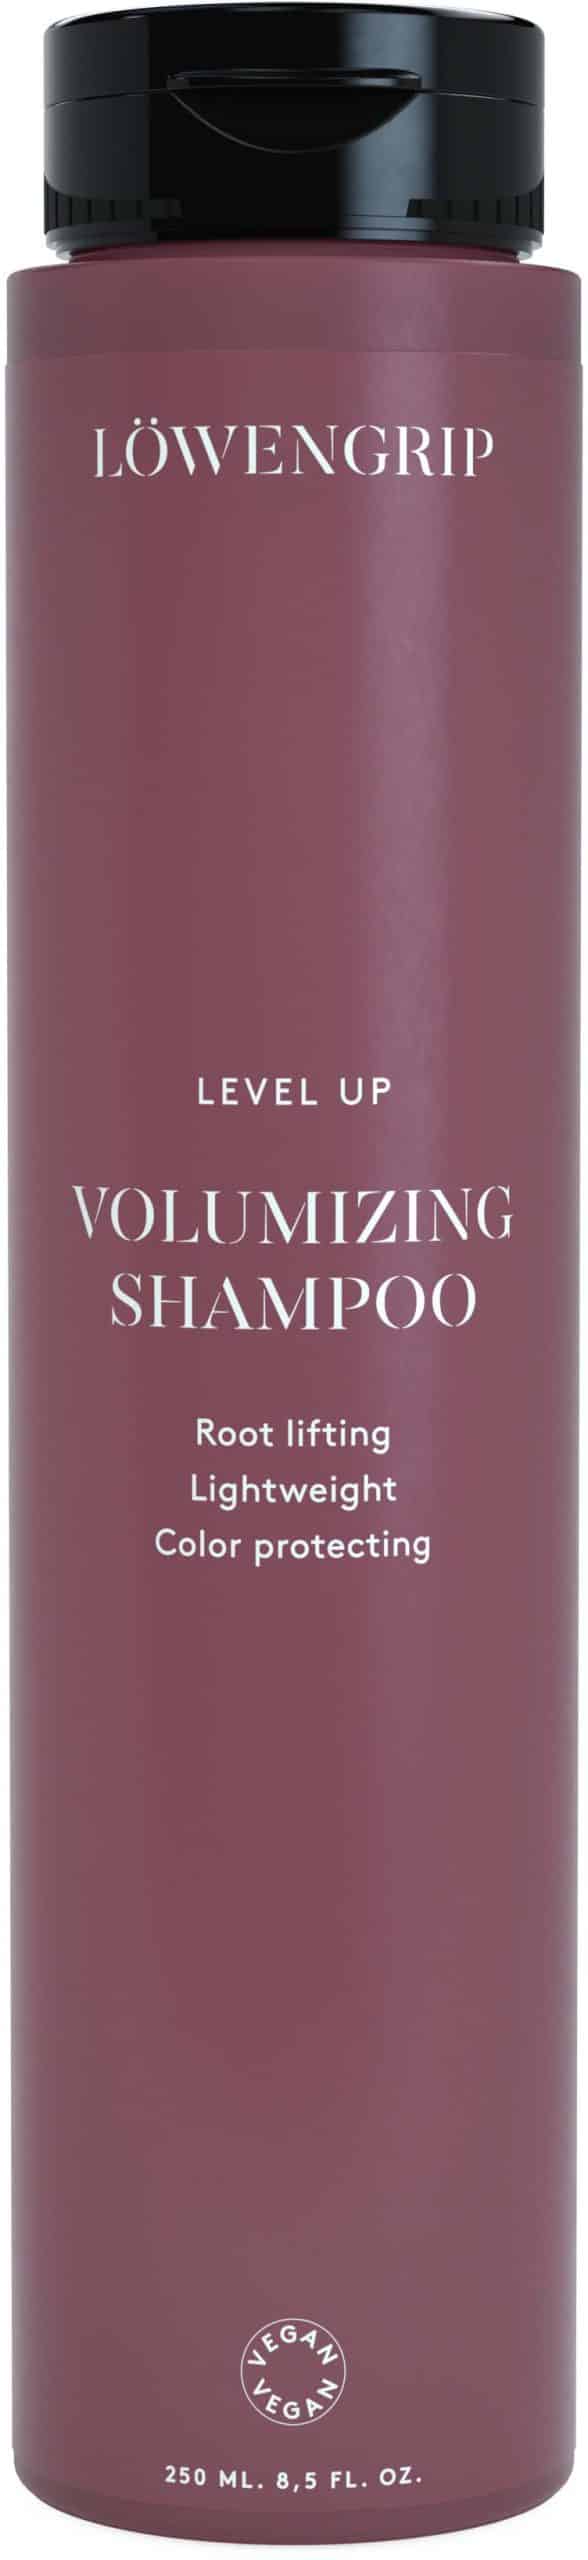 Löwengrip Level Up - Volumizing shampoo (250 ml)